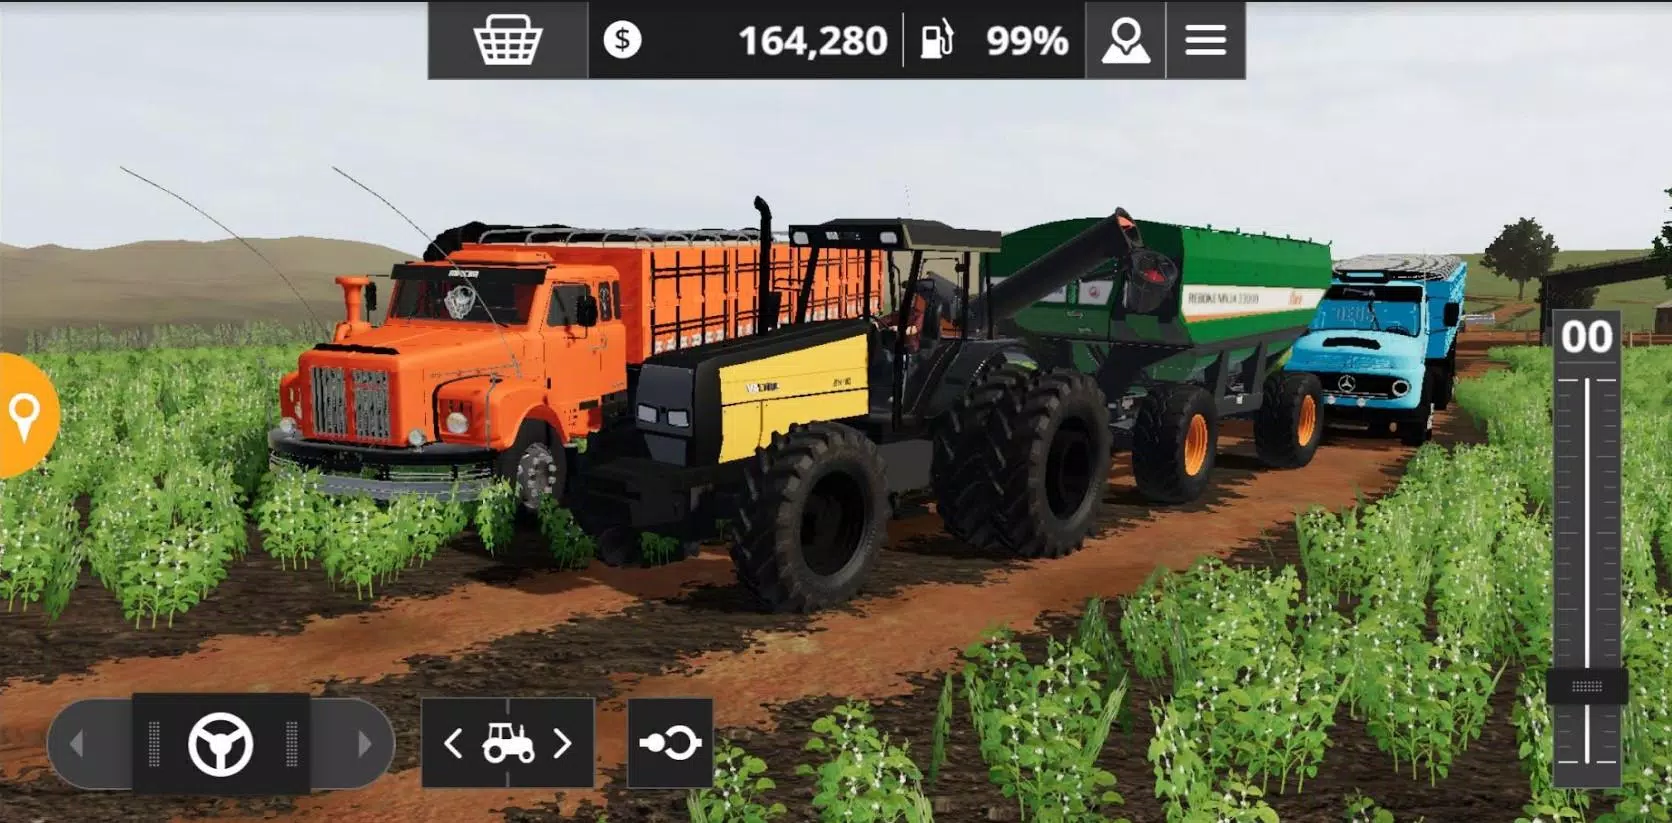 Download do APK de Jogo de Trator Farming Simulator 2020 Mods